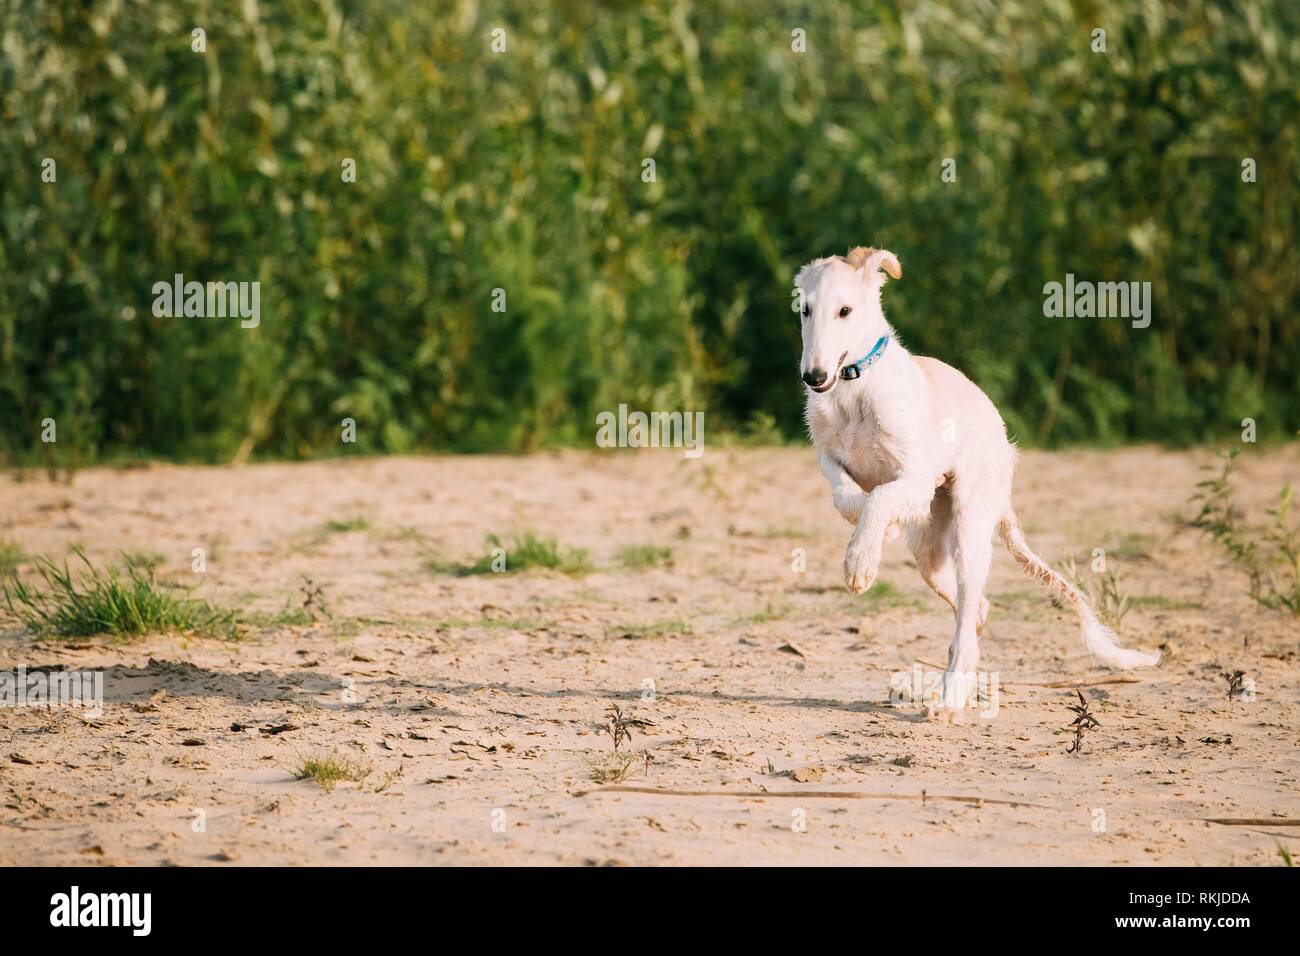 Running Puppy Of Russian Wolfhound Hunting Sighthound Russkaya Psovaya Borzaya Dog Outdoors. Stock Photo